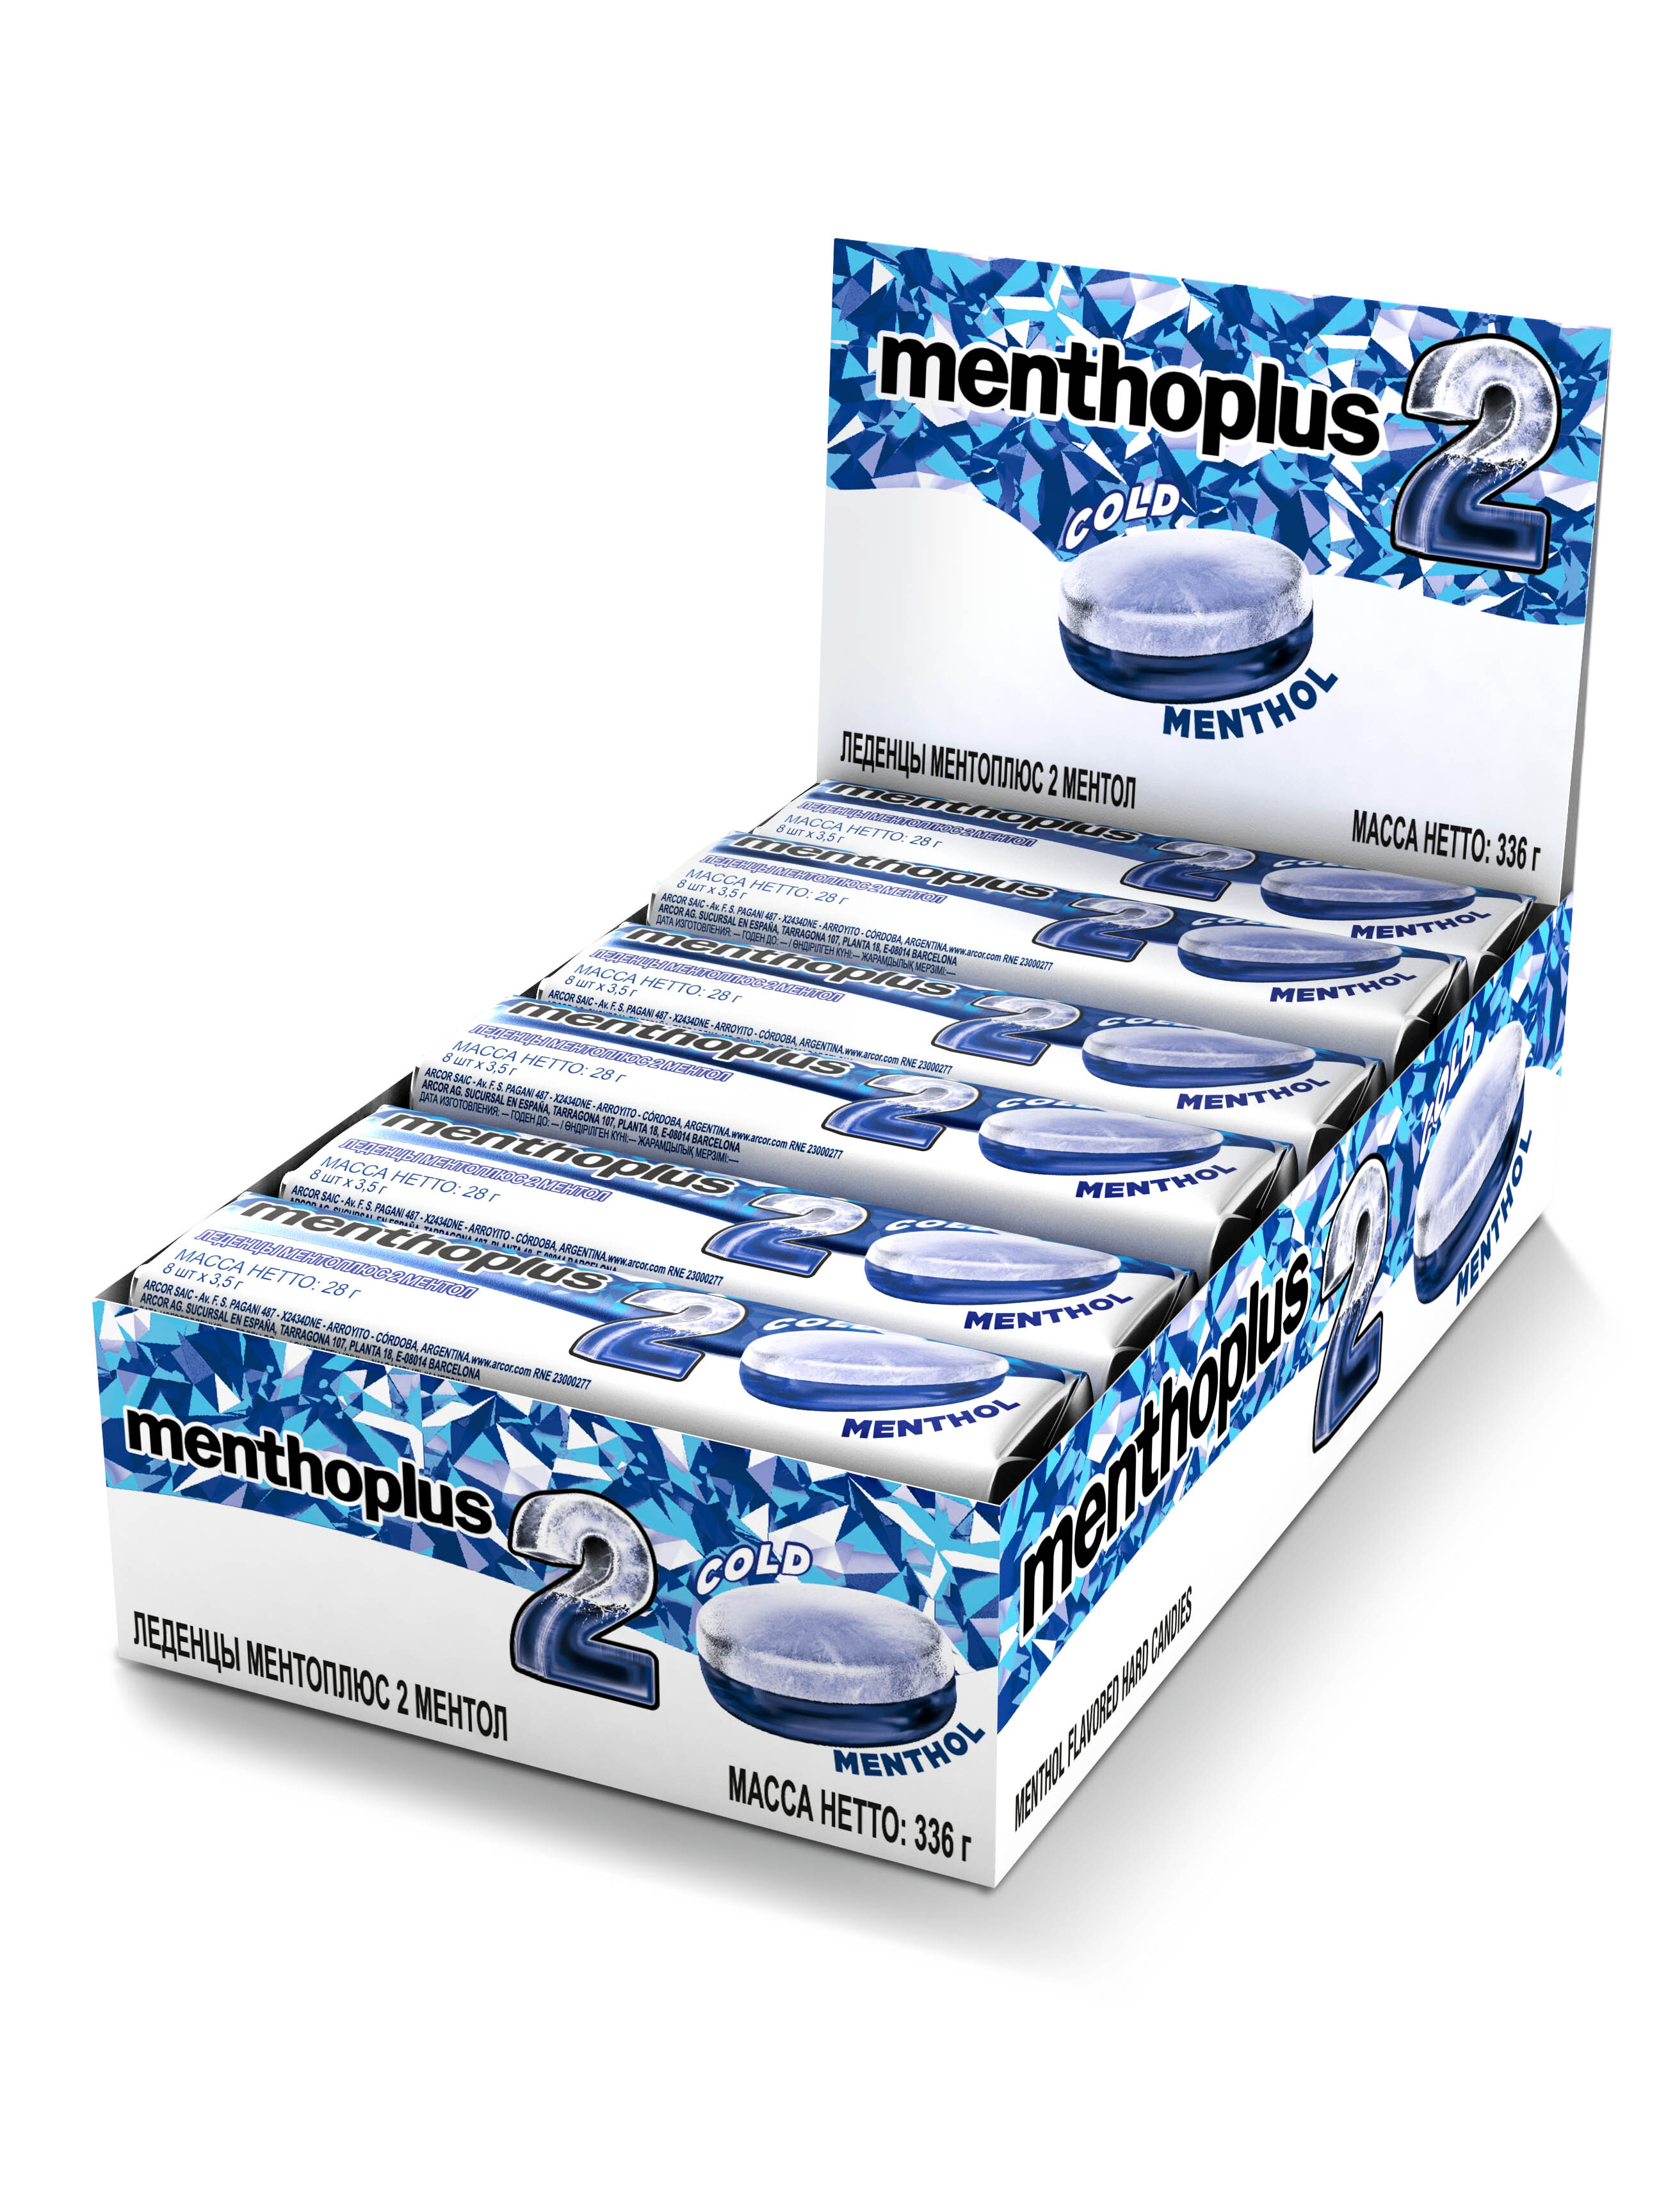 Леденцы Menthoplus 2 – MENTHOL двухслойные, с ксилитом смягчающие горло, 12 шт по 28 г